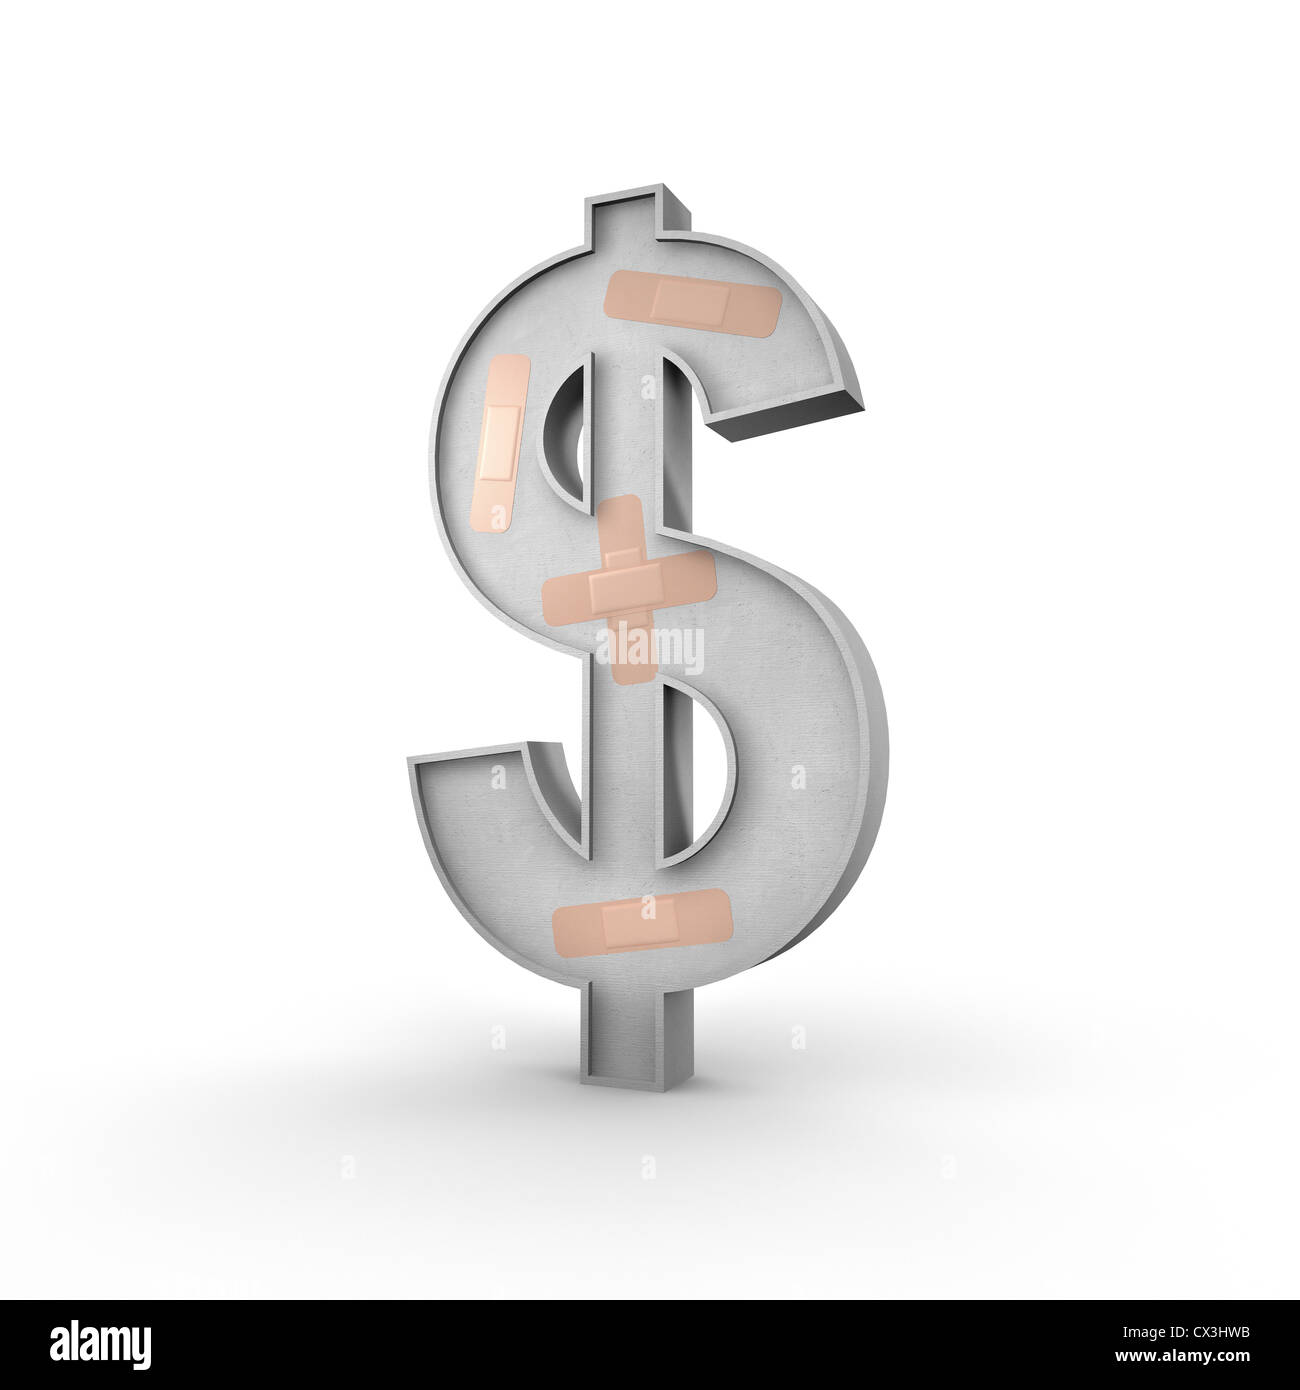 Dollarzeichen Mit Pflastern Auf der Oberfläche Auf Weissem Hintergrund - Dollarzeichen mit Bandagen Stockfoto